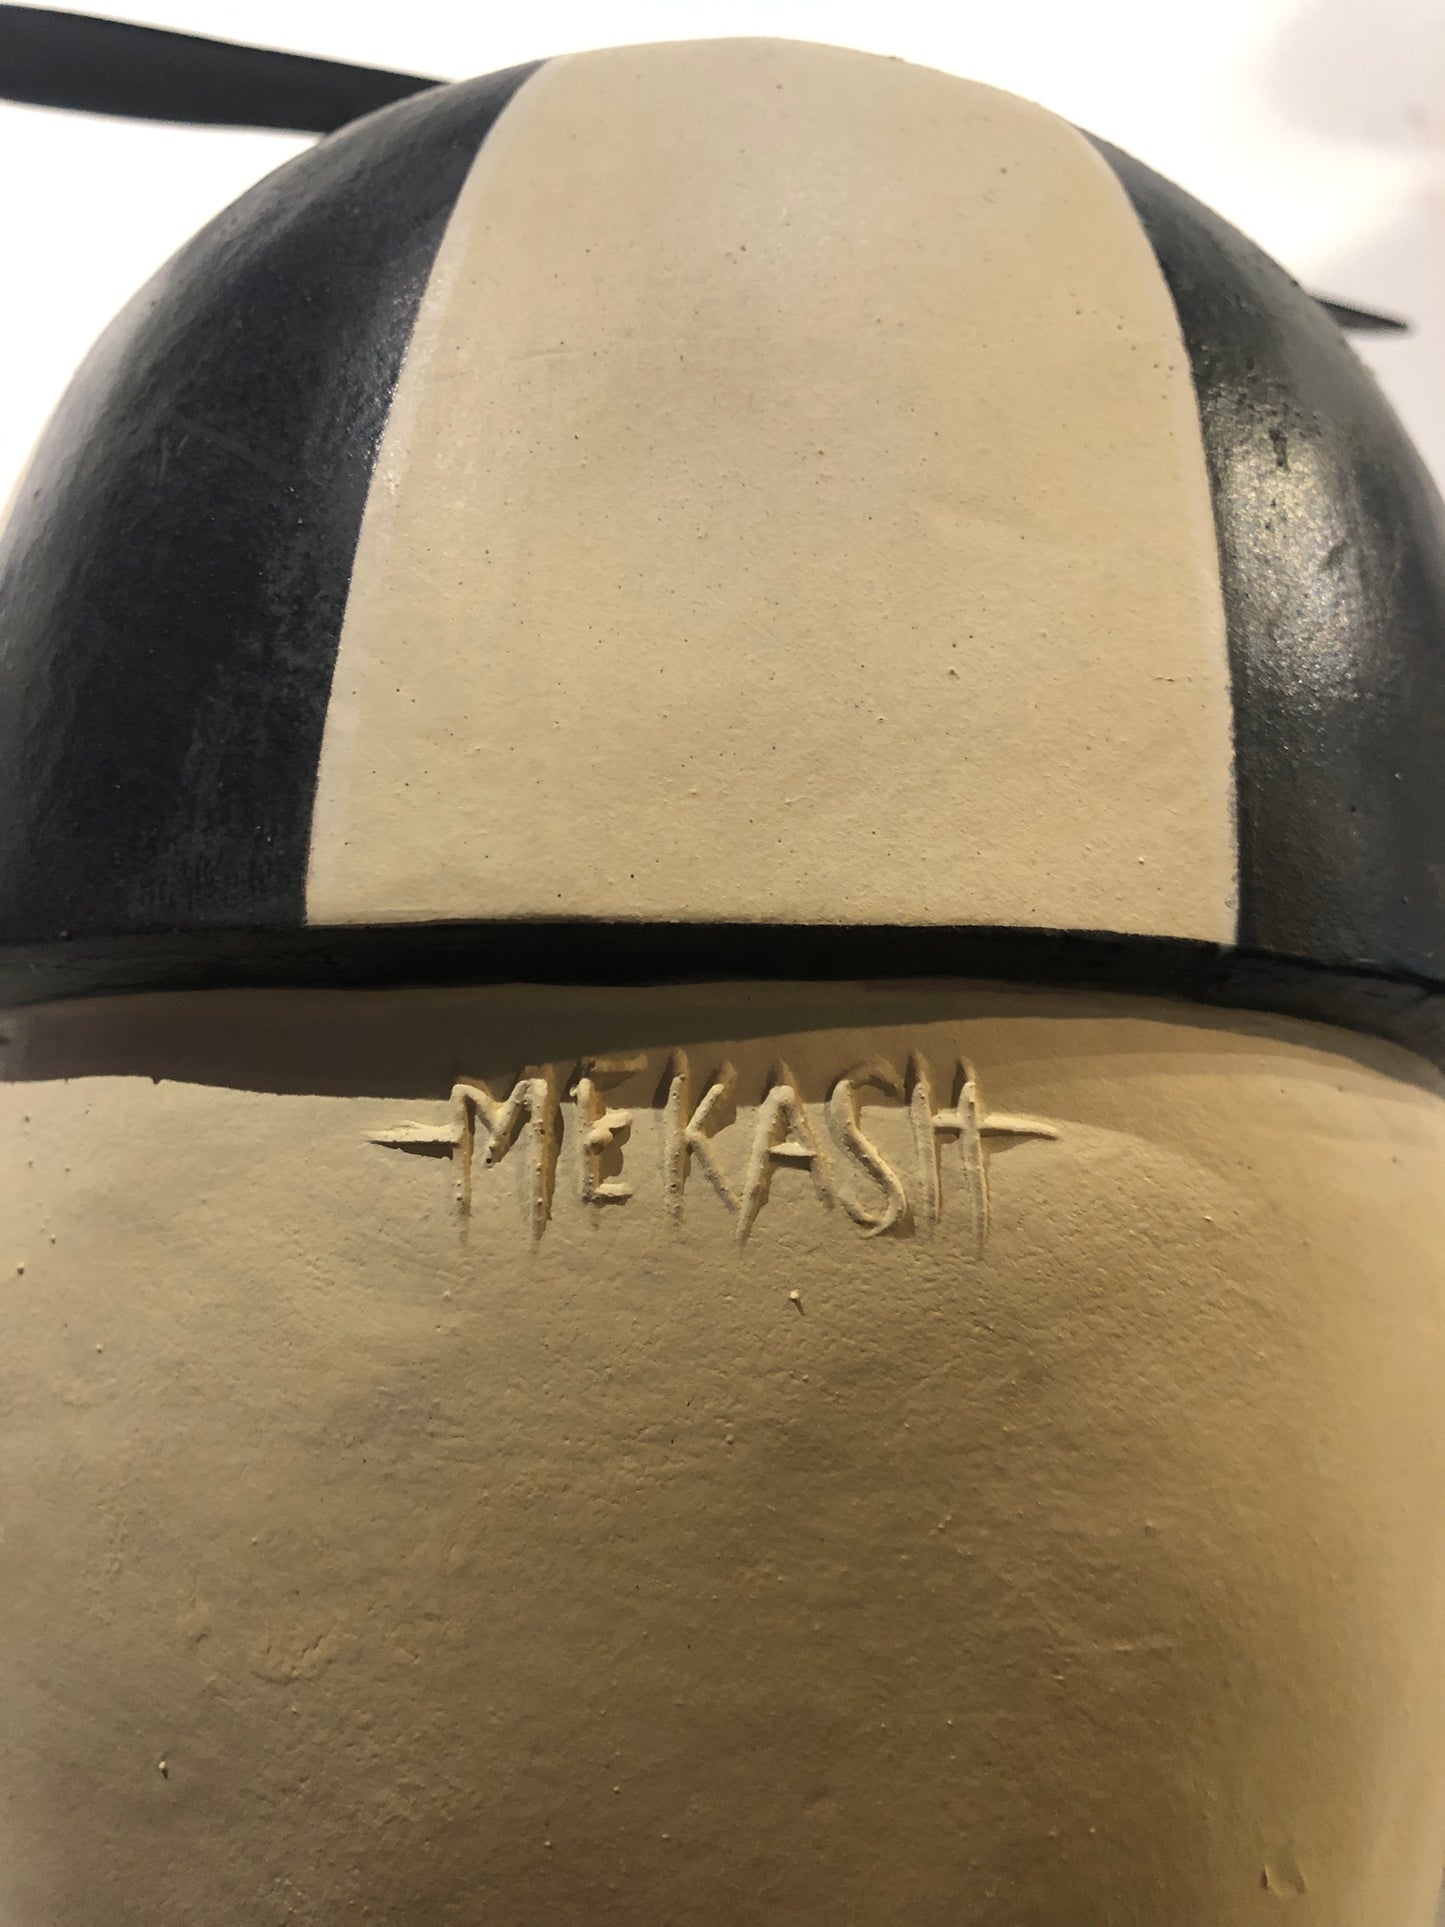 Michael Mekash "RKL Beenie Boy" Mask Sculpture